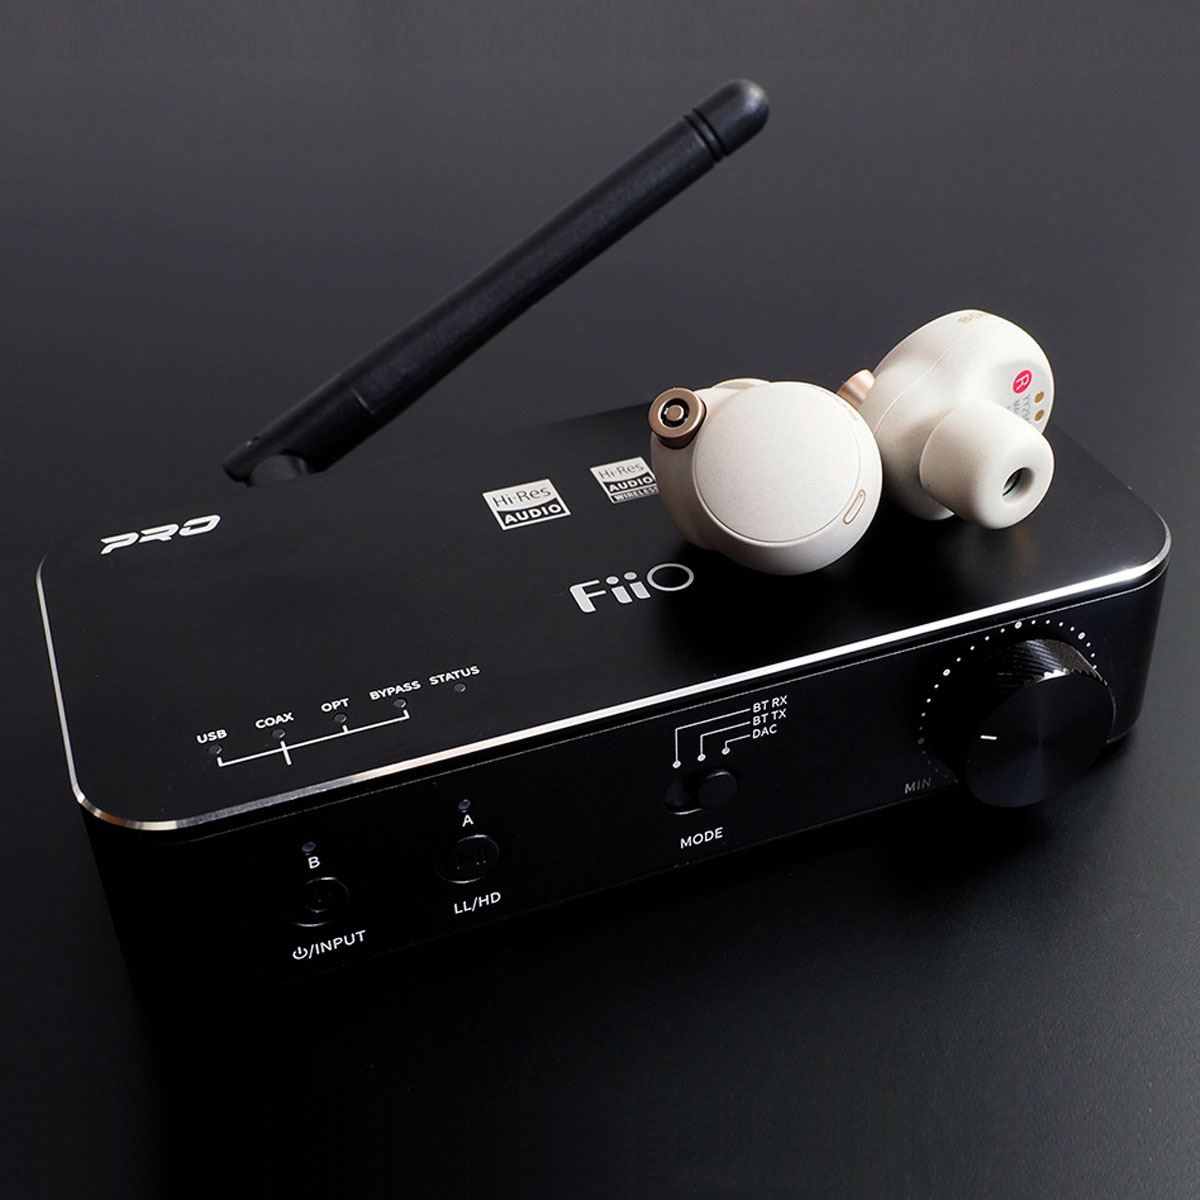 オーディオ機器 アンプ さまざまな機器をワイヤレス化できるFiiO「BTA30 Pro」でハイレゾ音楽 